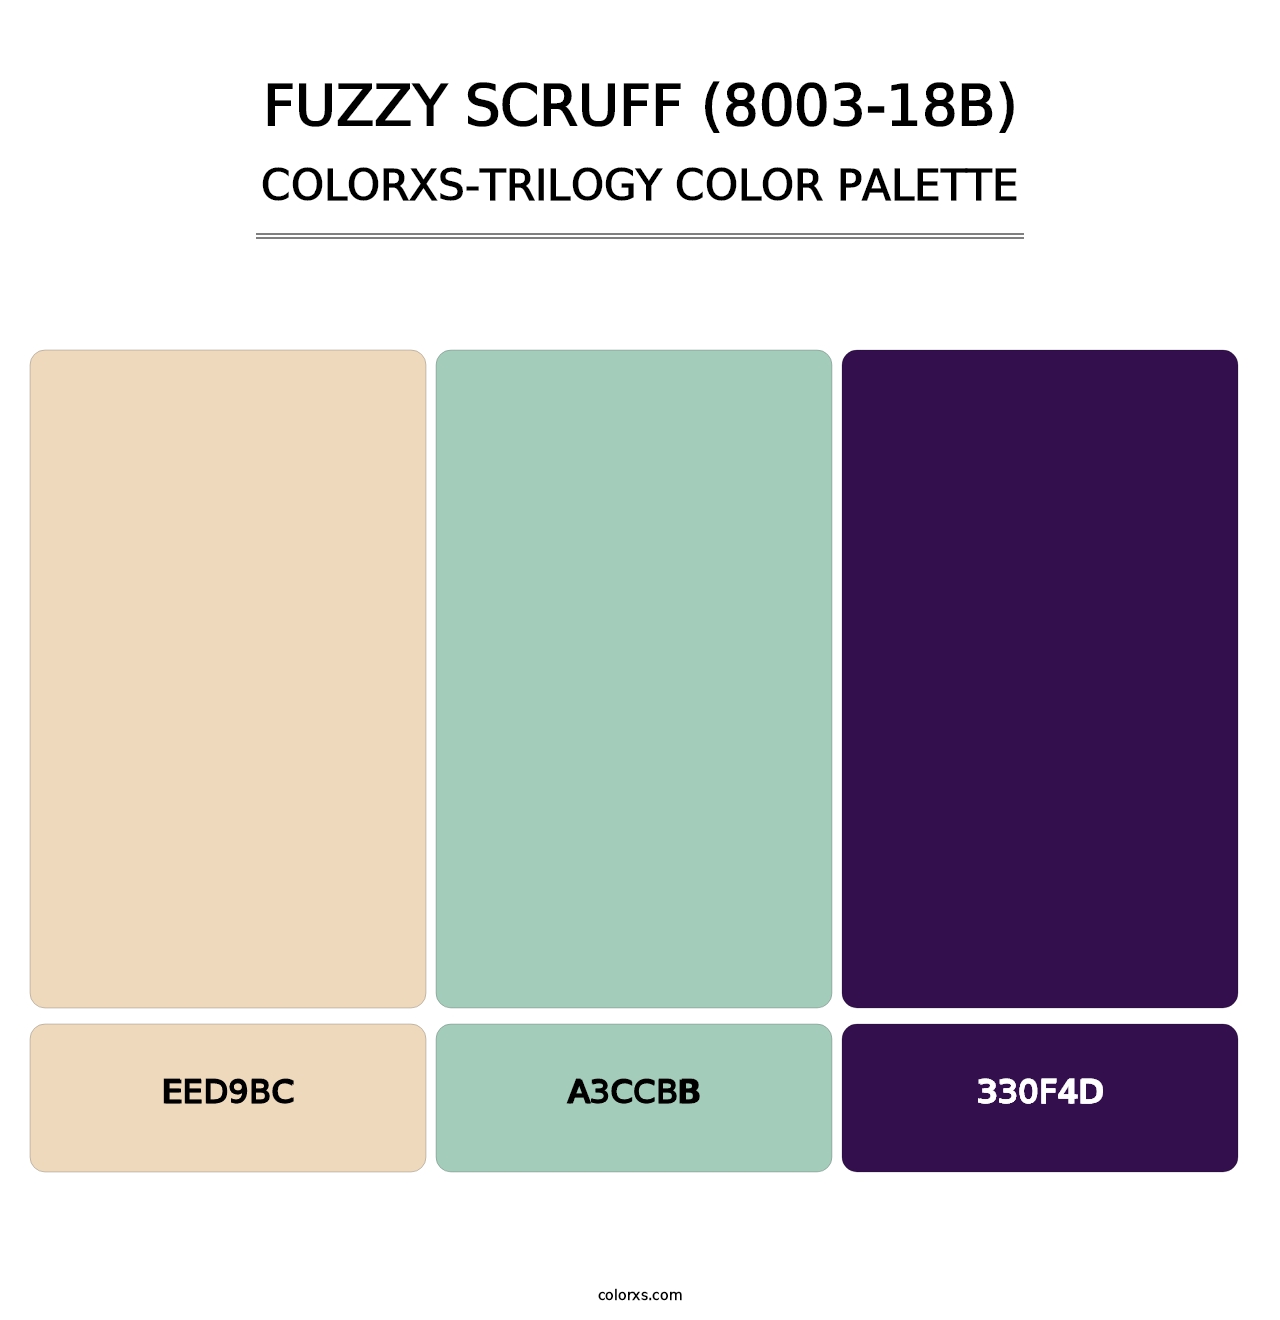 Fuzzy Scruff (8003-18B) - Colorxs Trilogy Palette